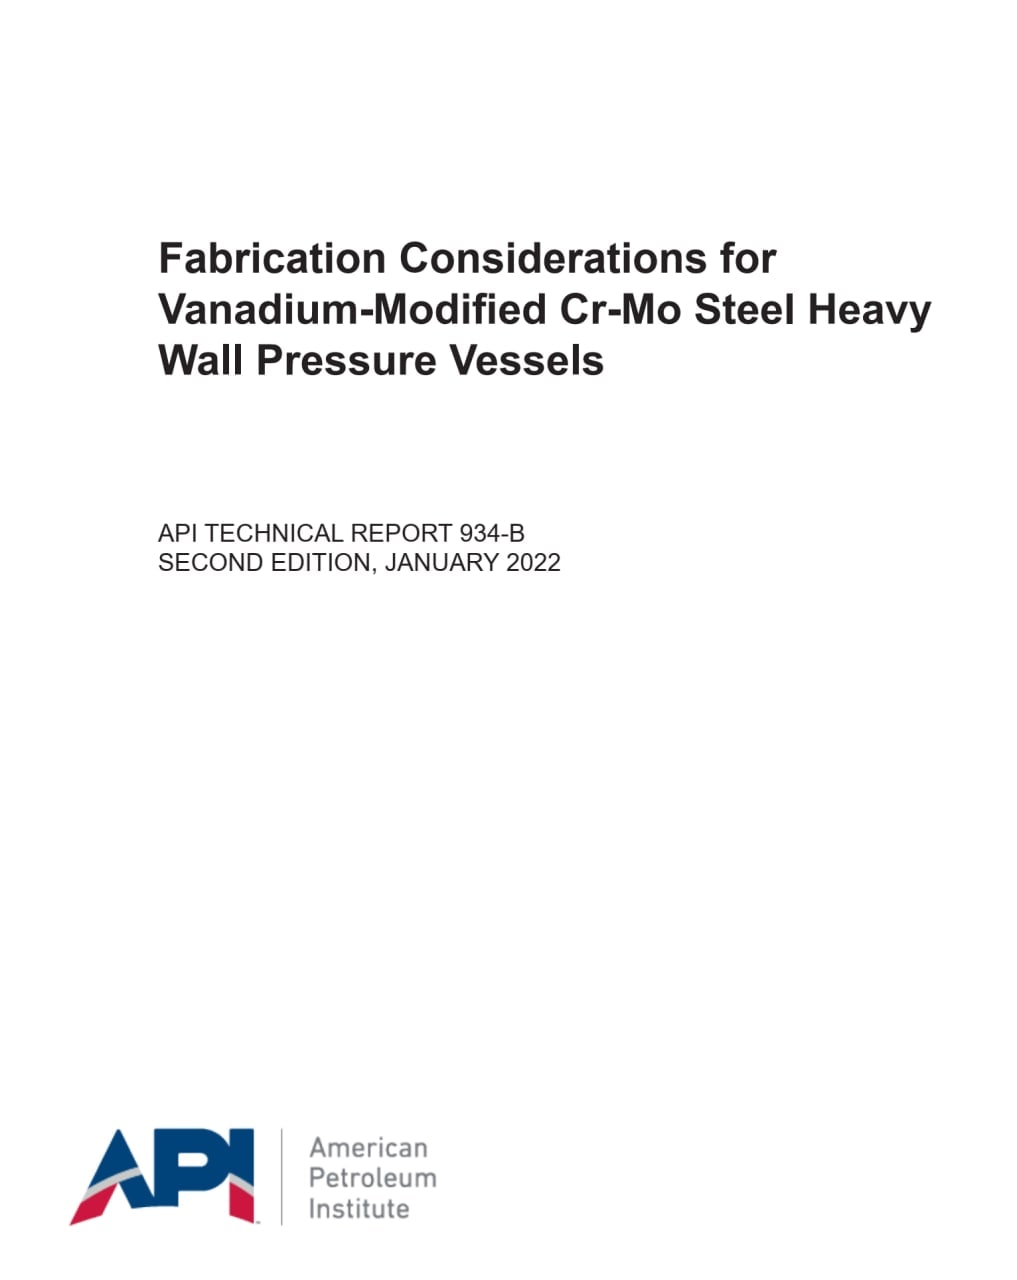 استاندارد ملاحظات خاص ساخت ظروف تحت فشار جدارضخیم کروم- مولی - وانادیوم ویرایش ژانویه 2022 ✅Fabrication Considerations for Vanadium-Modified Cr-Mo Steel Heavy Wall Pressure Vessels